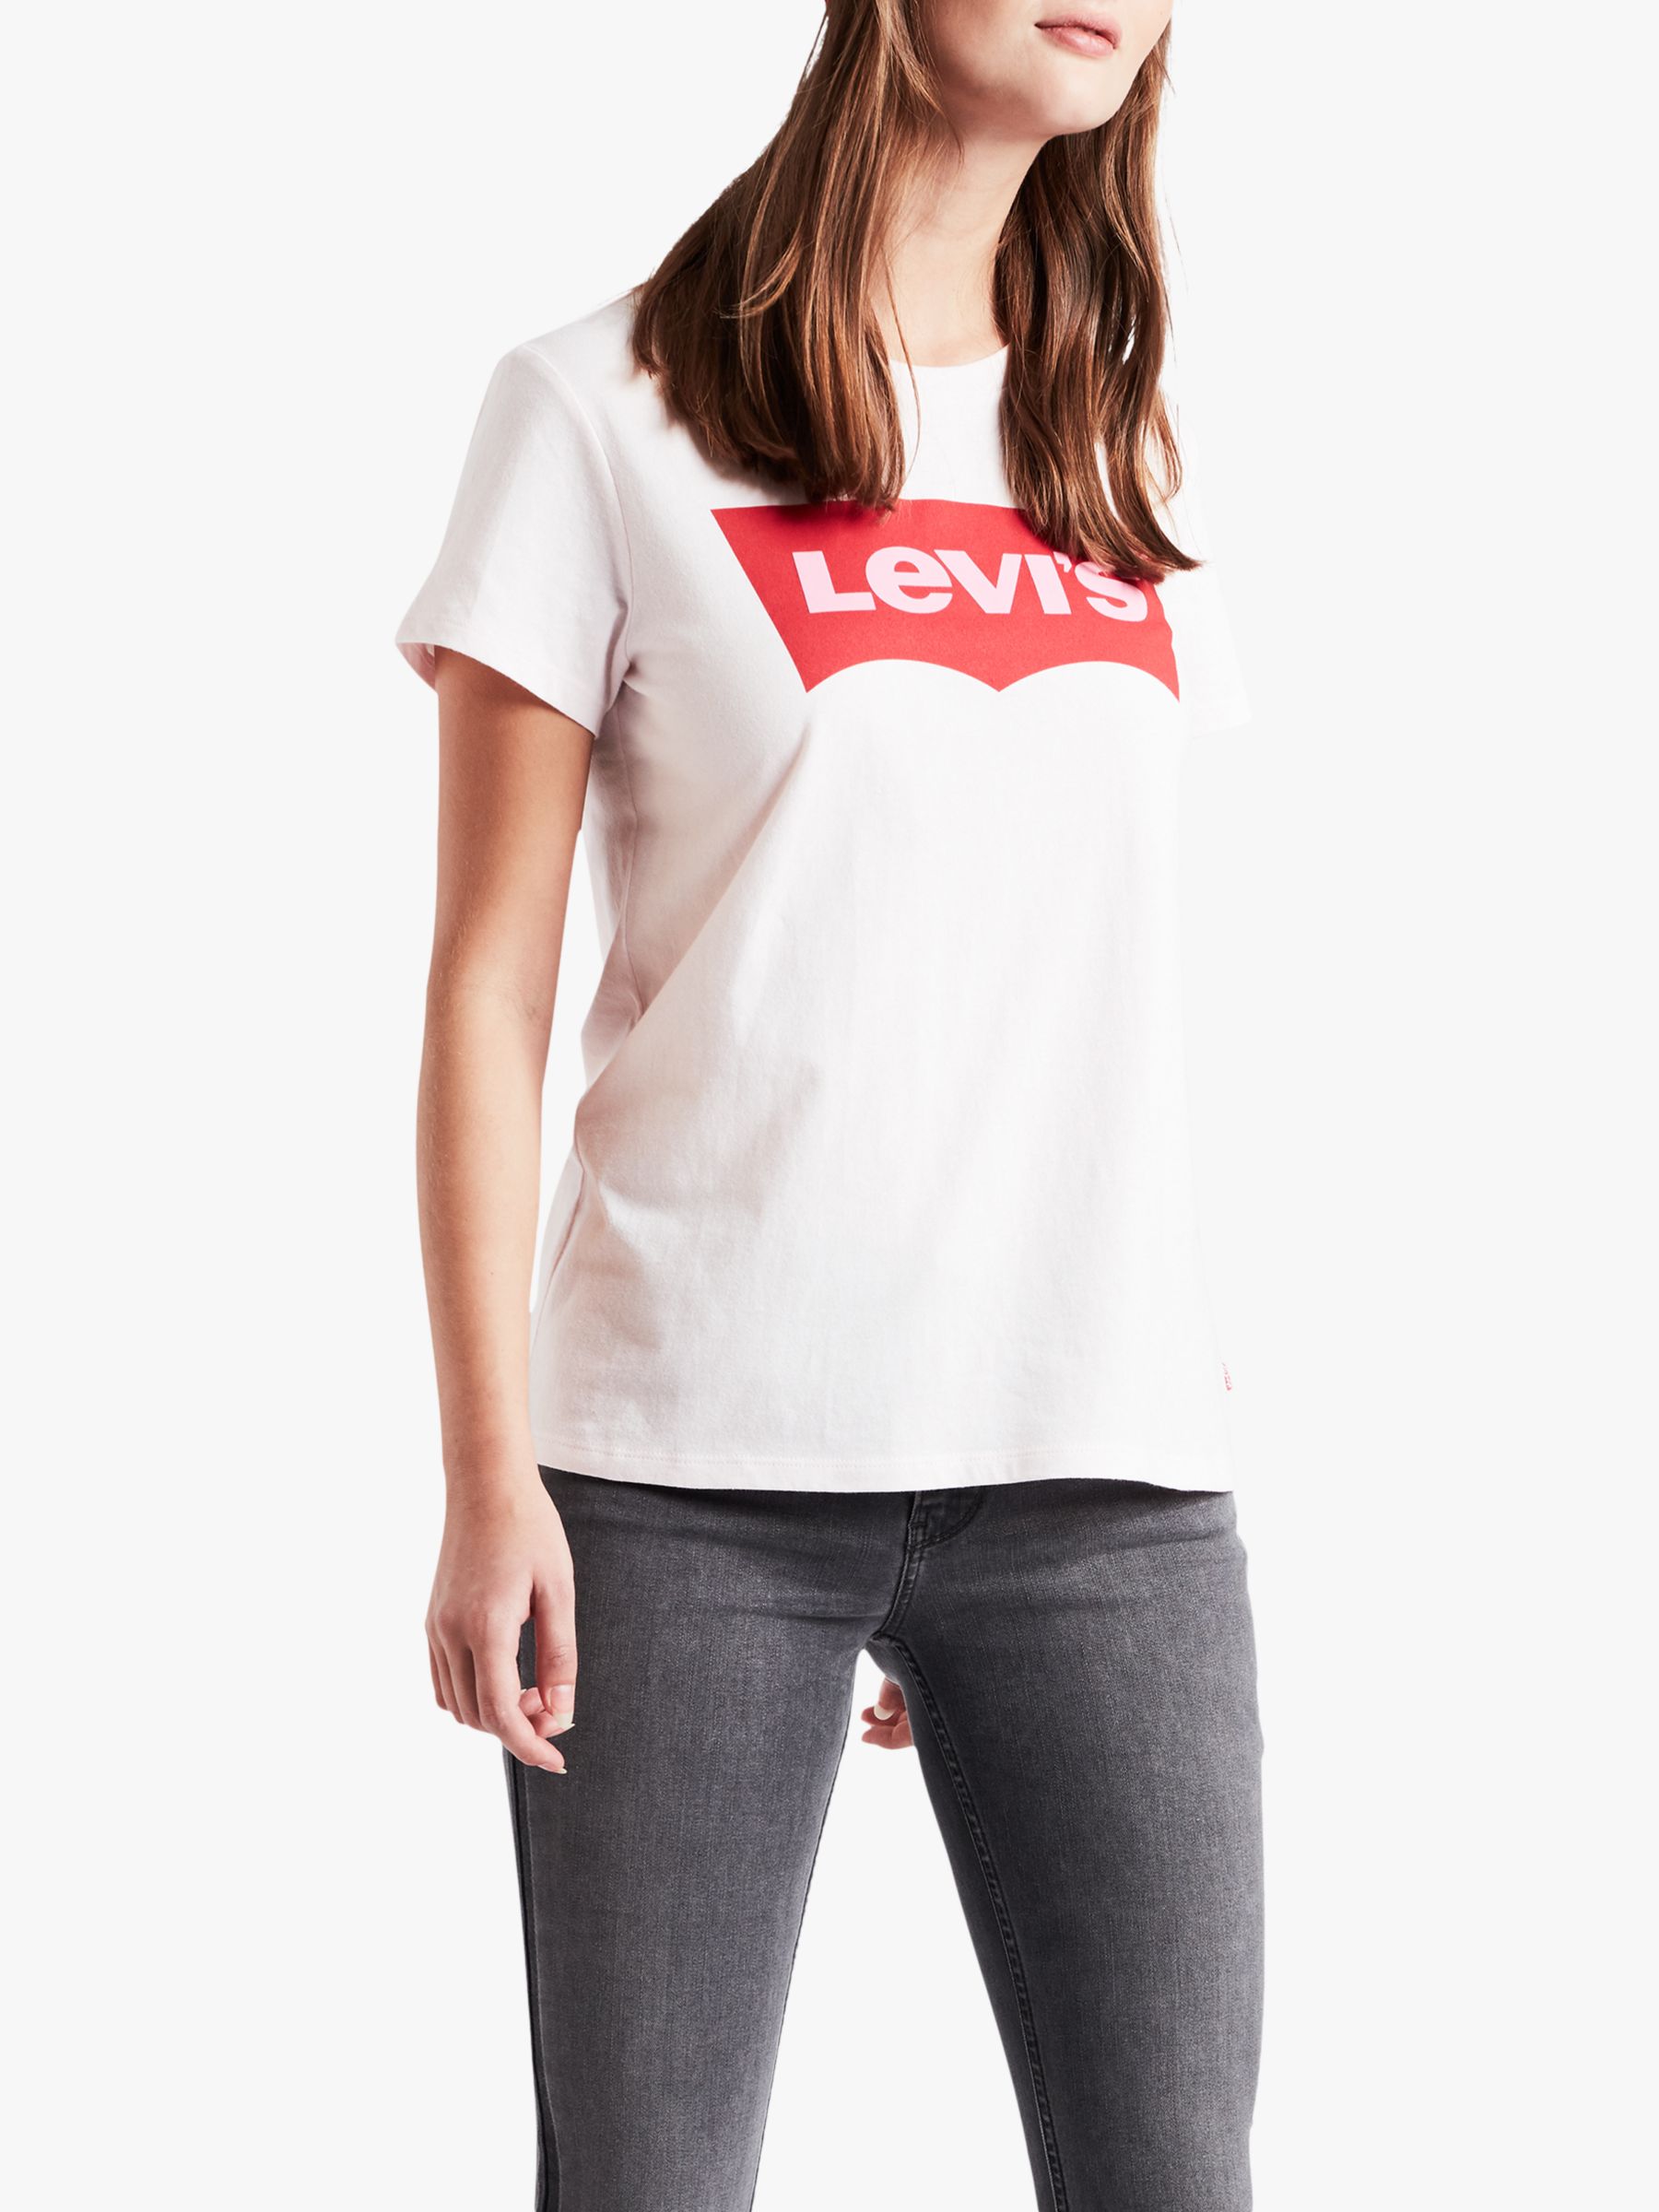 levis girl t shirt online